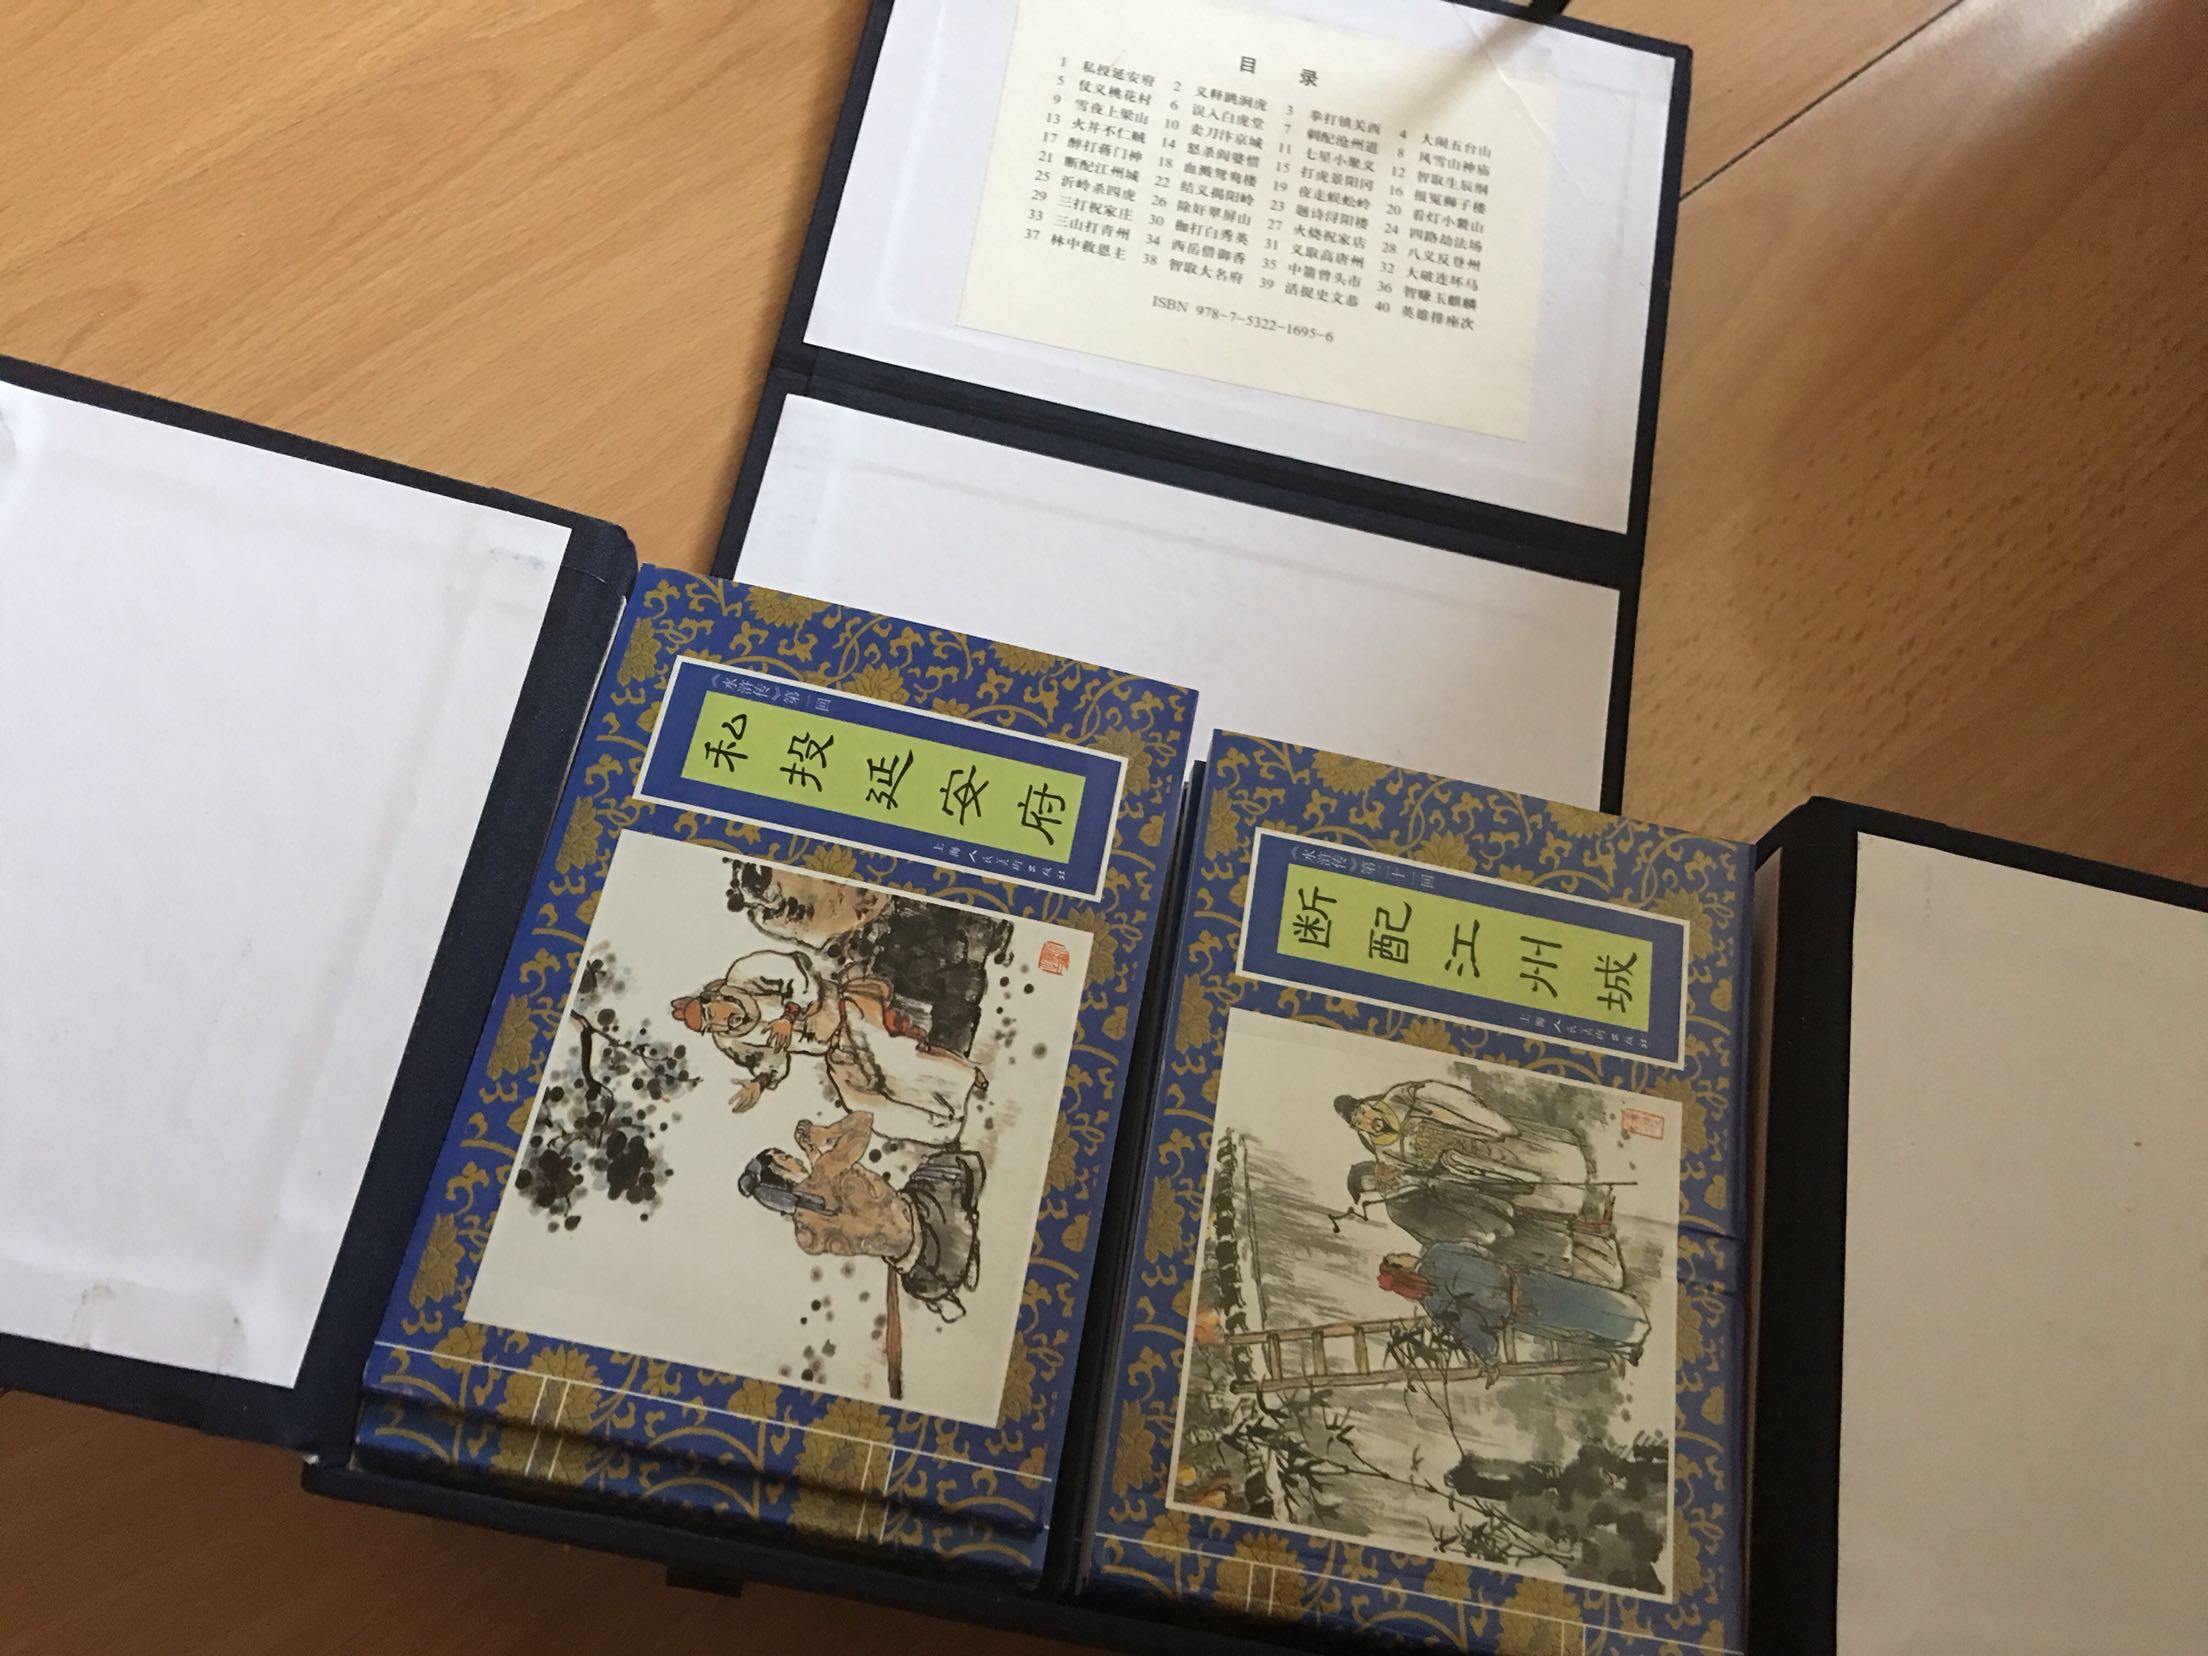 包装好，印刷纸张都不错，但不是老版绘本。第一次对自营的物流速度感到失望，在北京5月31日下单原本做为六一礼物，可6月3日才收到货。